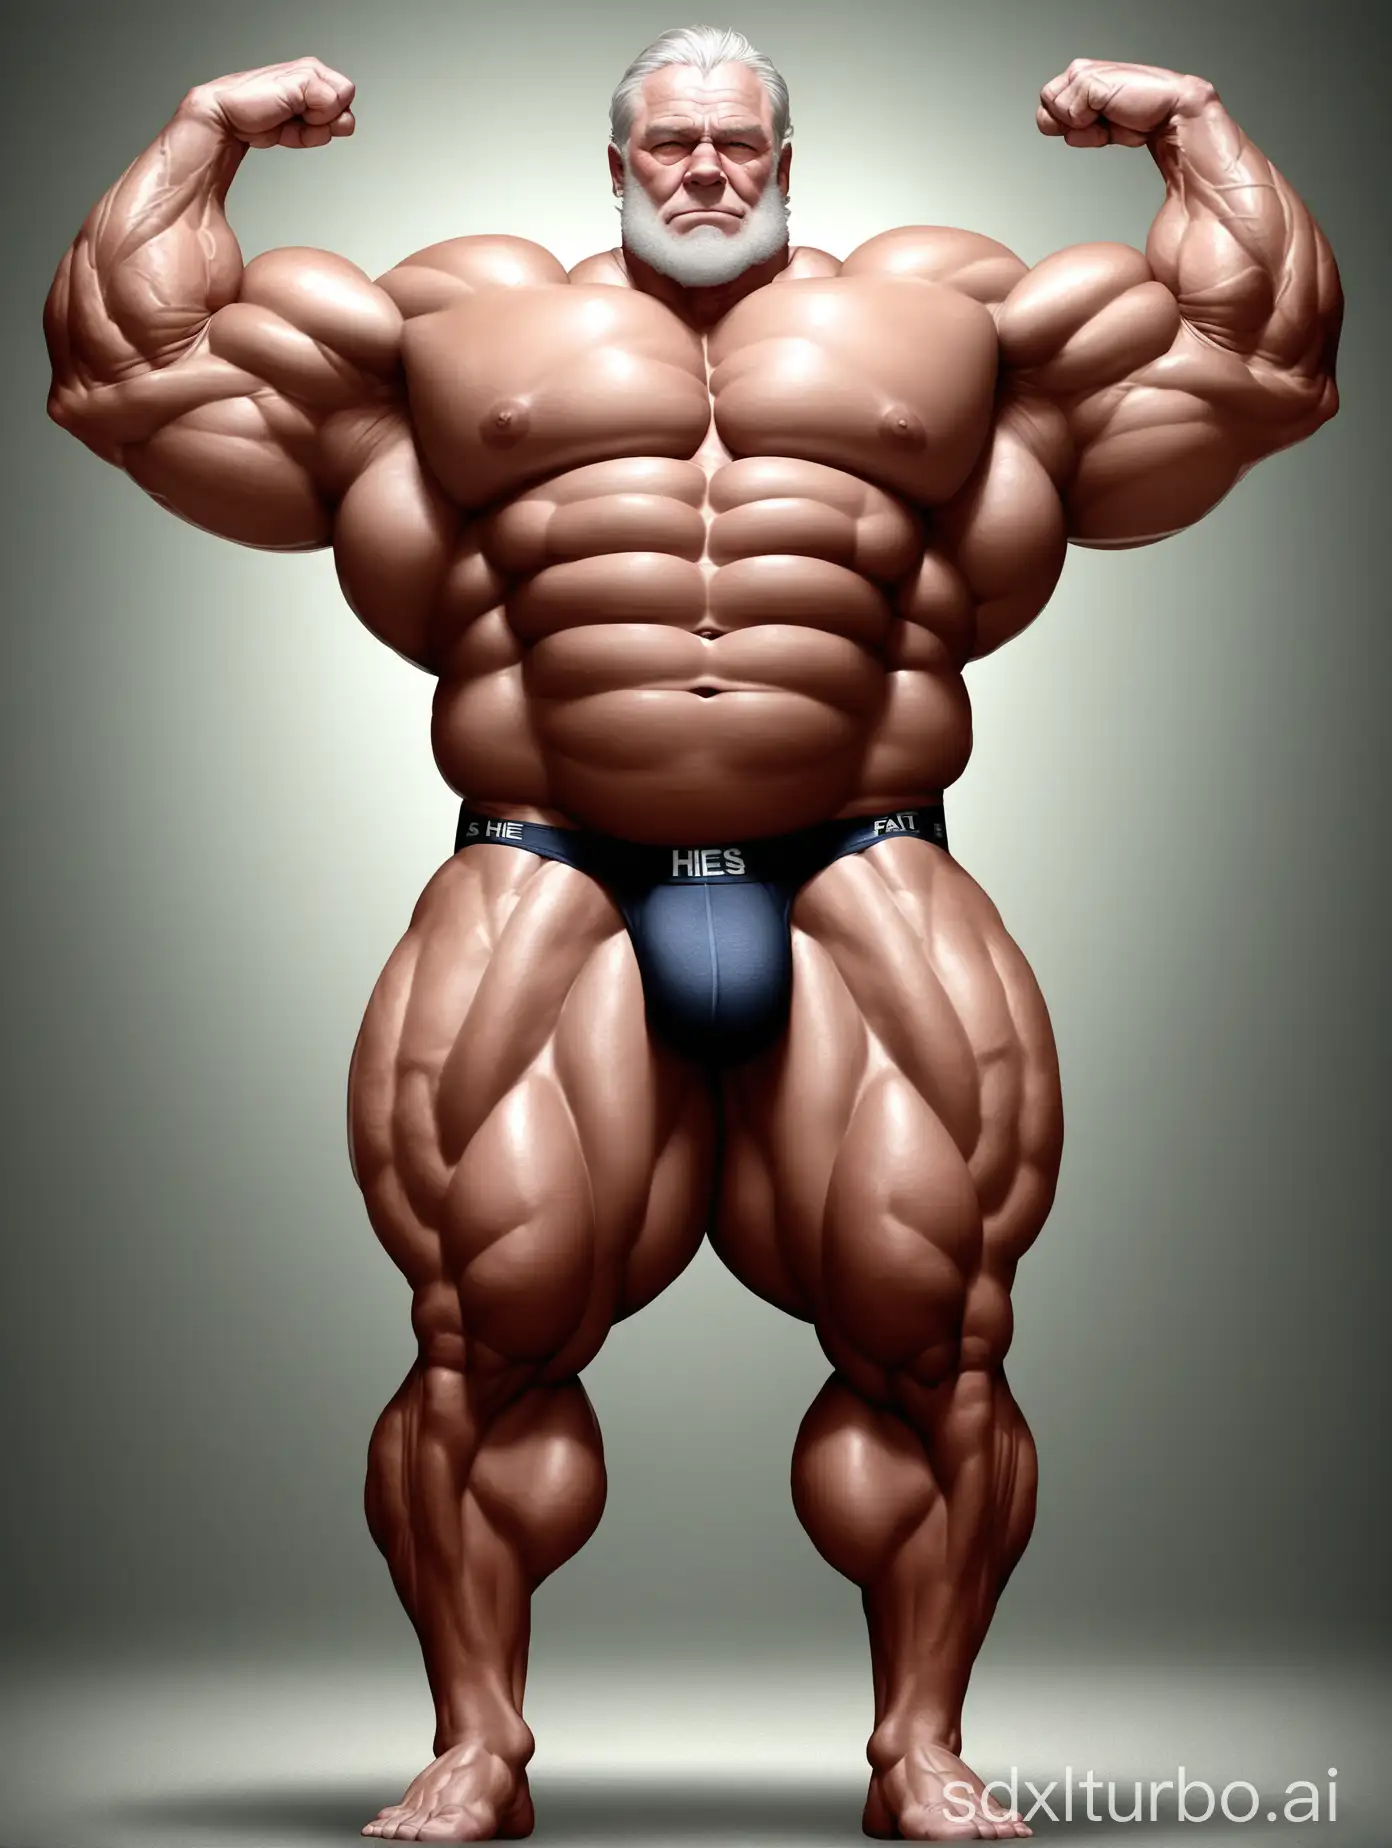 Massive-Muscle-Man-Flexing-Biceps-in-Underwear